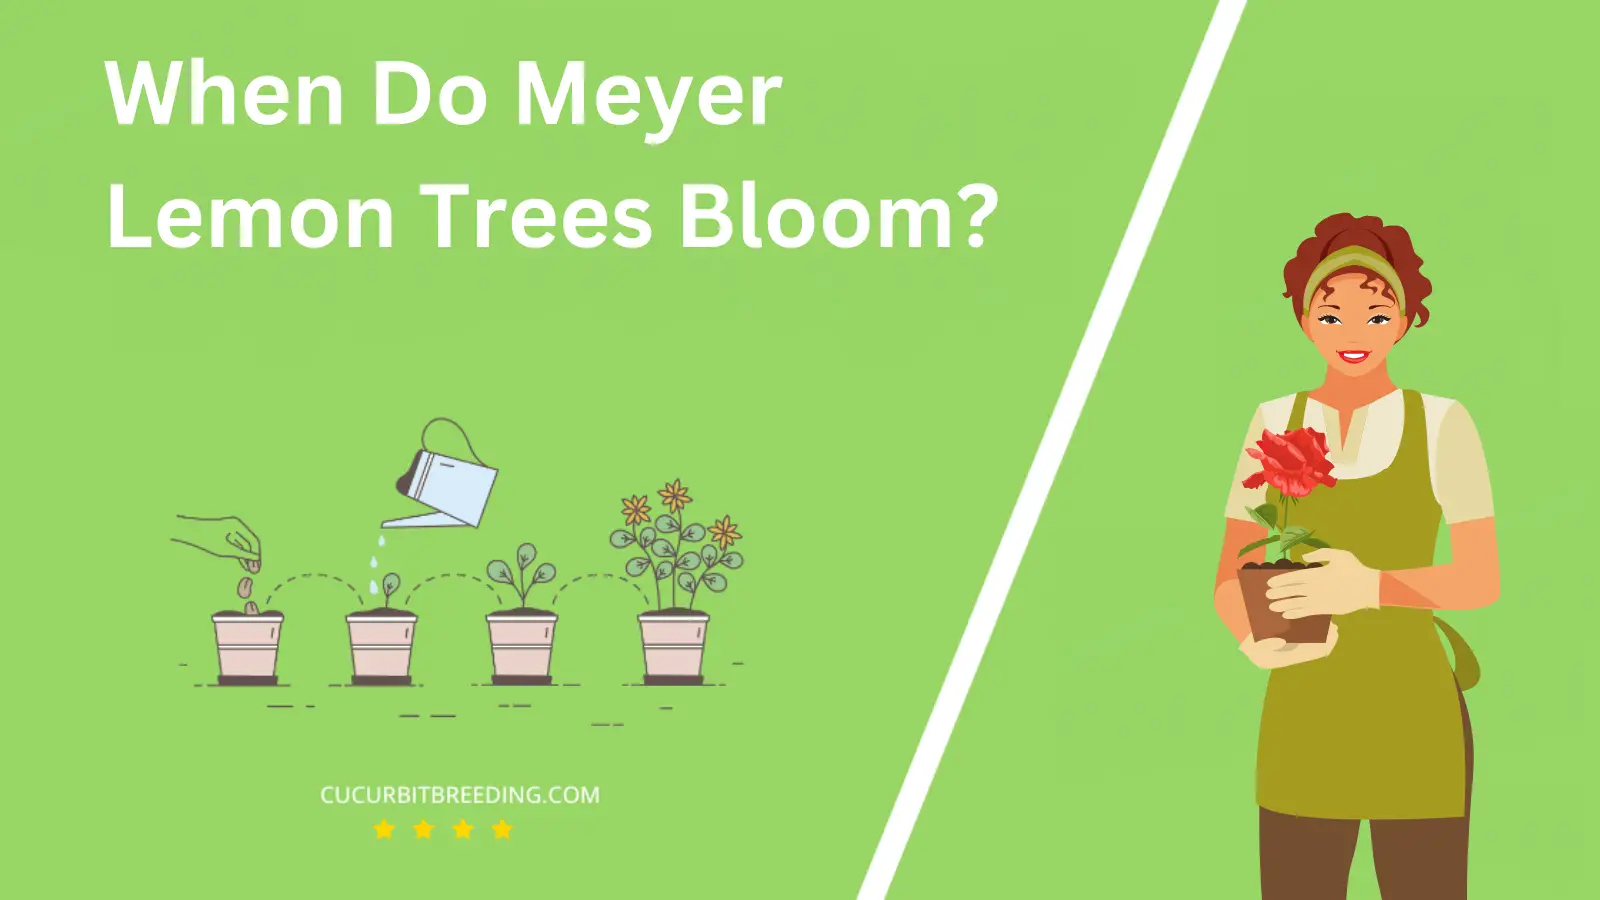 When Do Meyer Lemon Trees Bloom?